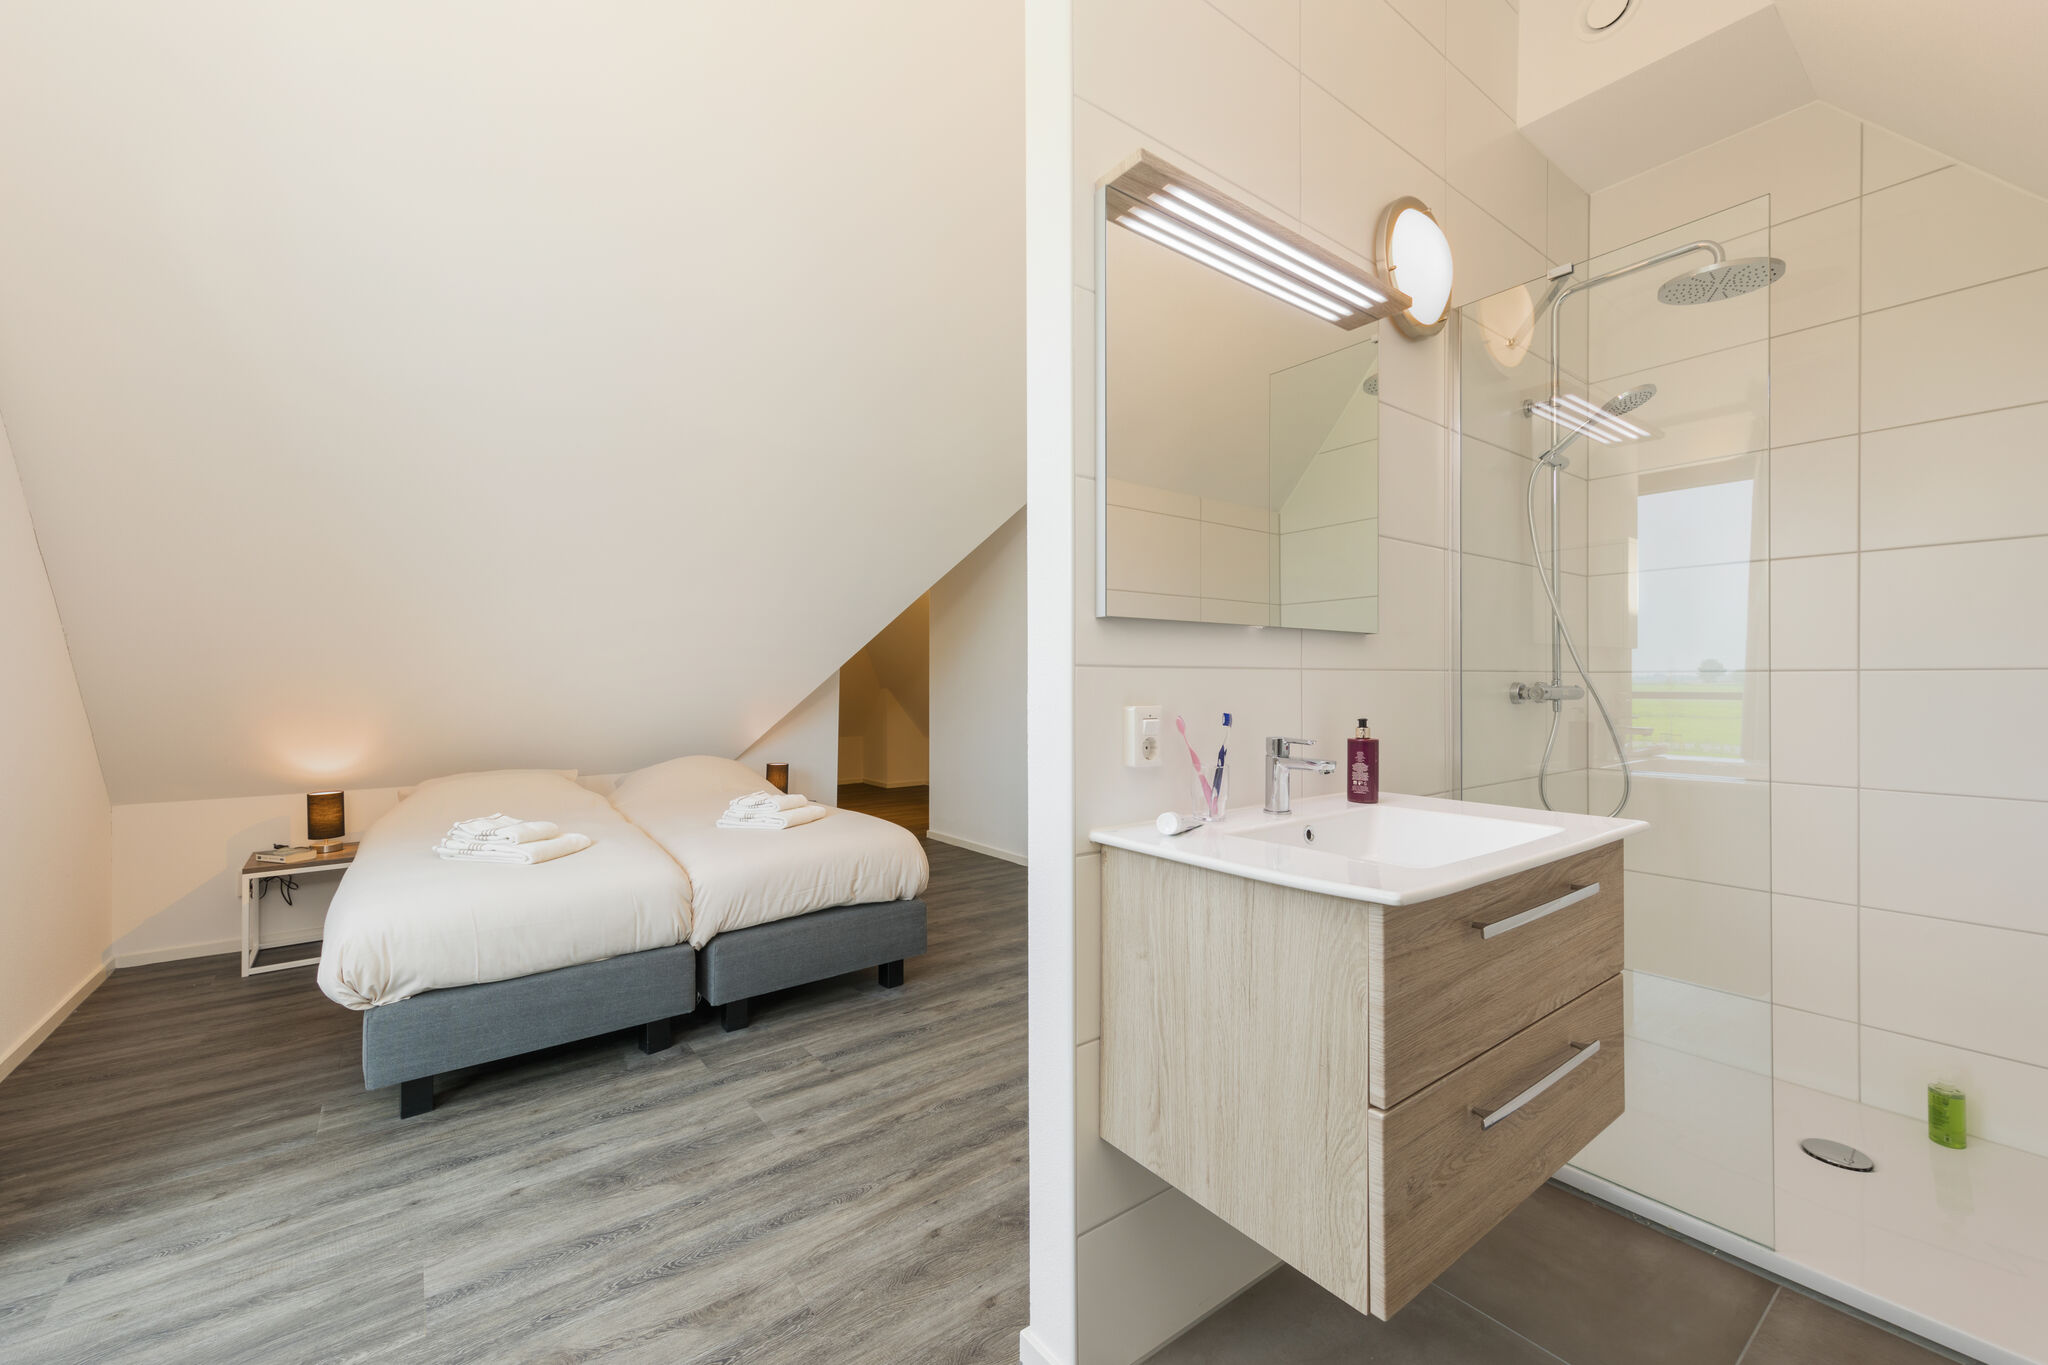 Luxe watervilla met drie badkamers, bij de Friese Meren